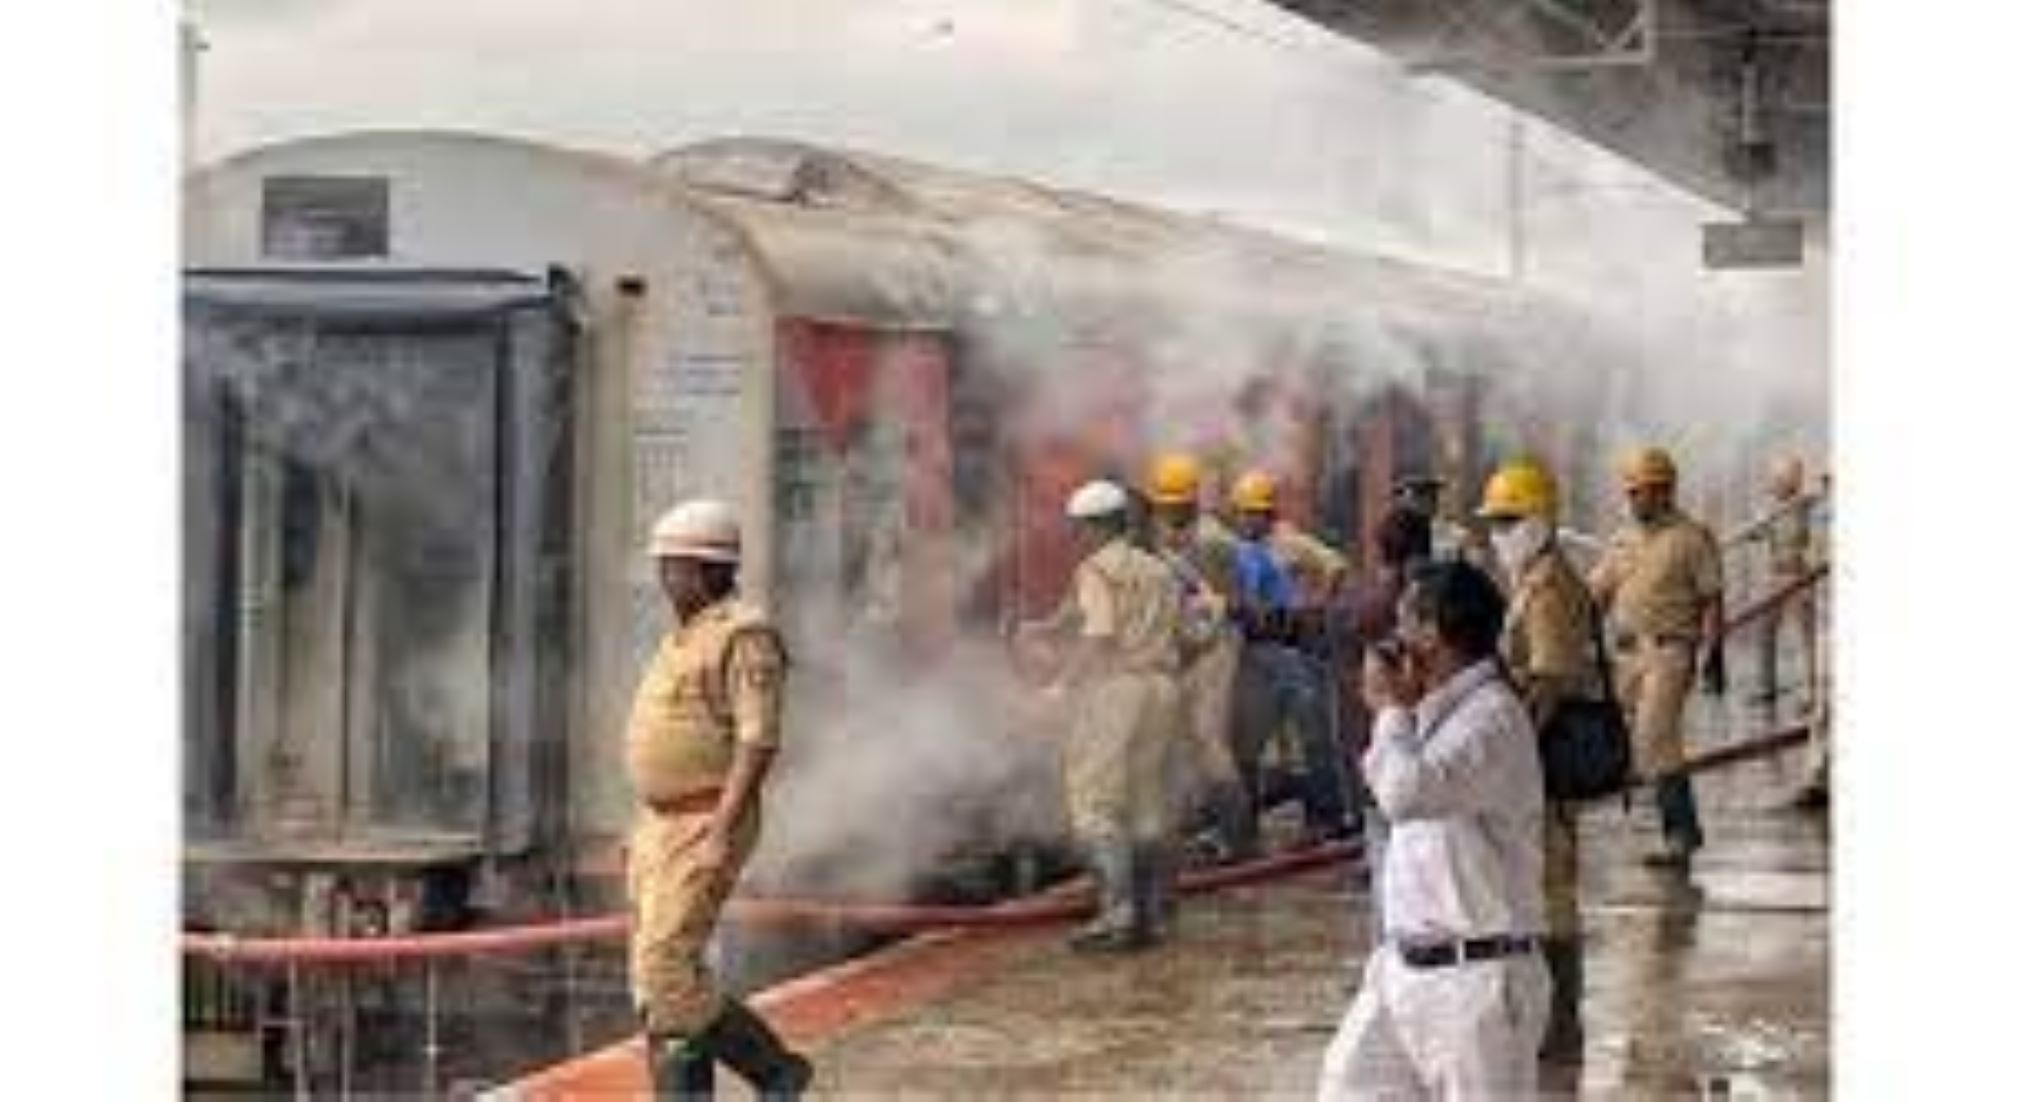 Fire Erupted Inside Train In India’s Bengaluru